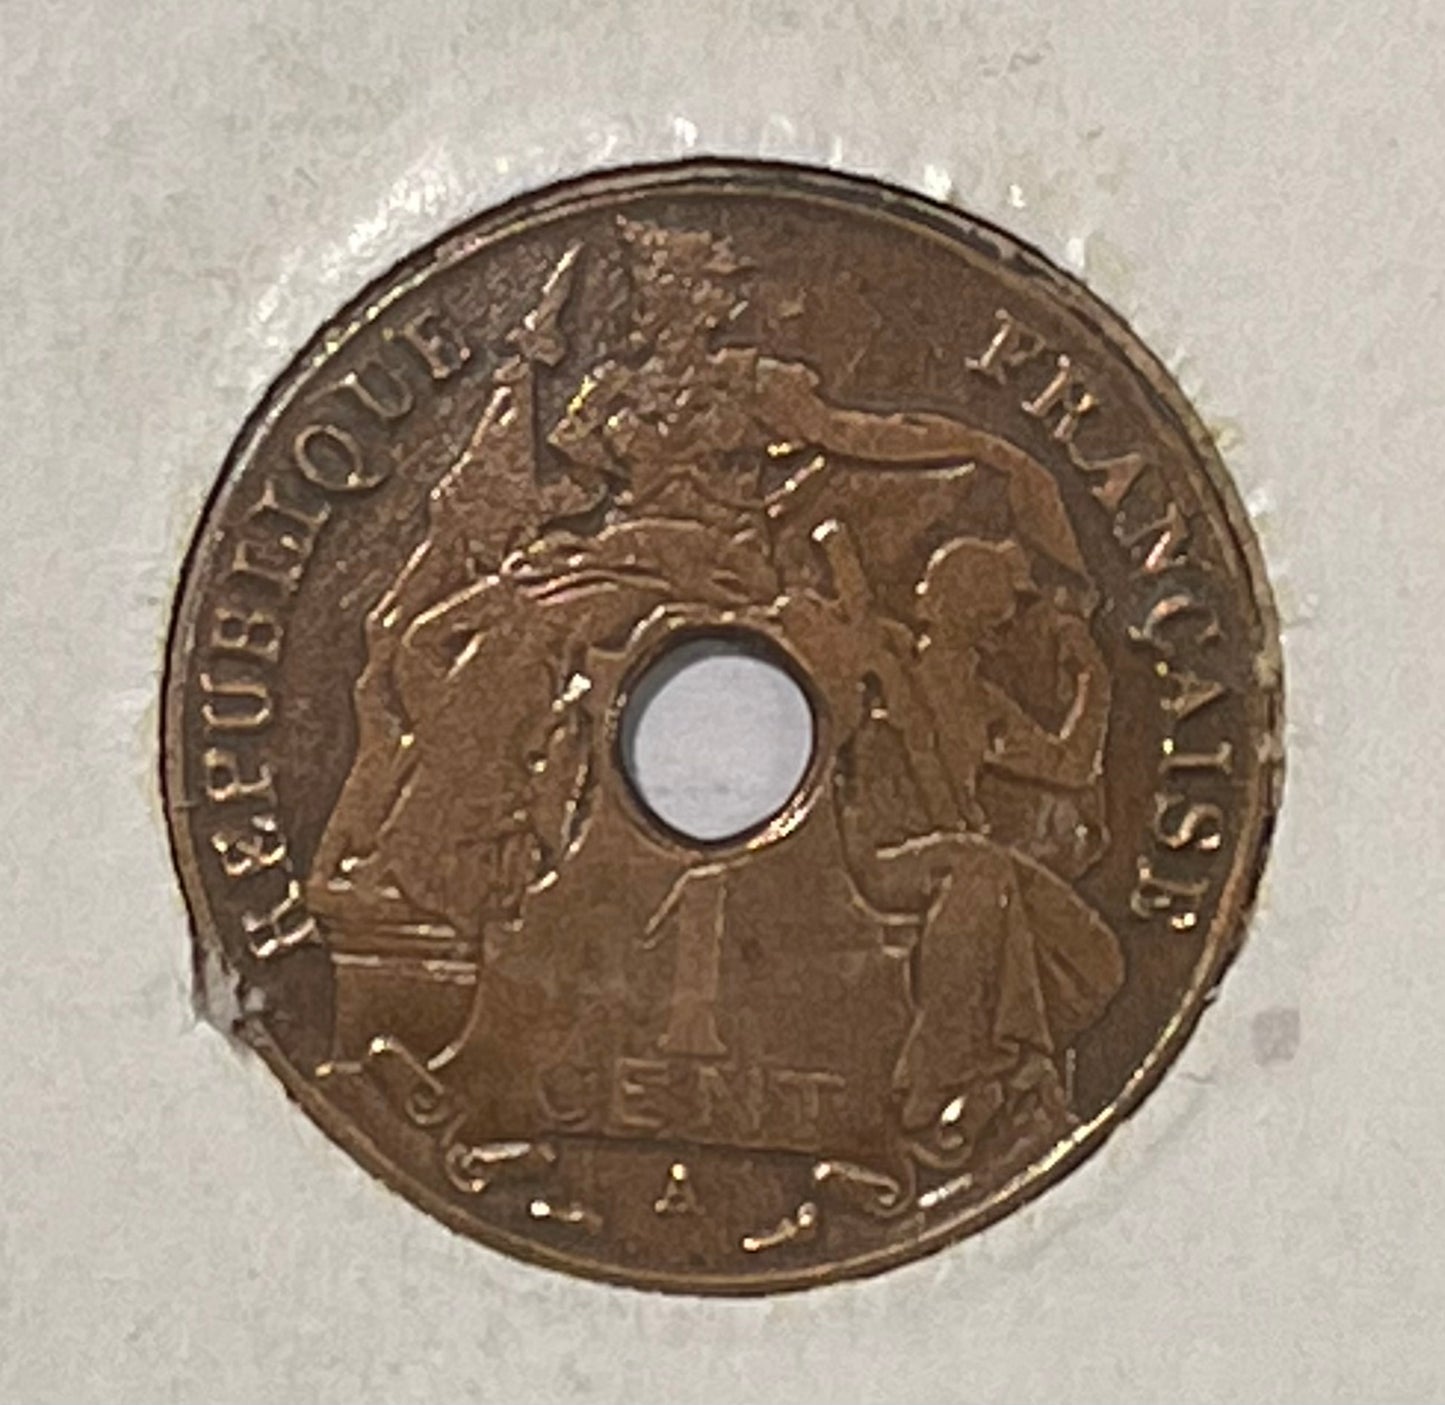 1930 Indo-Chine Francaise Republique Francaise Cent Bronze Coin